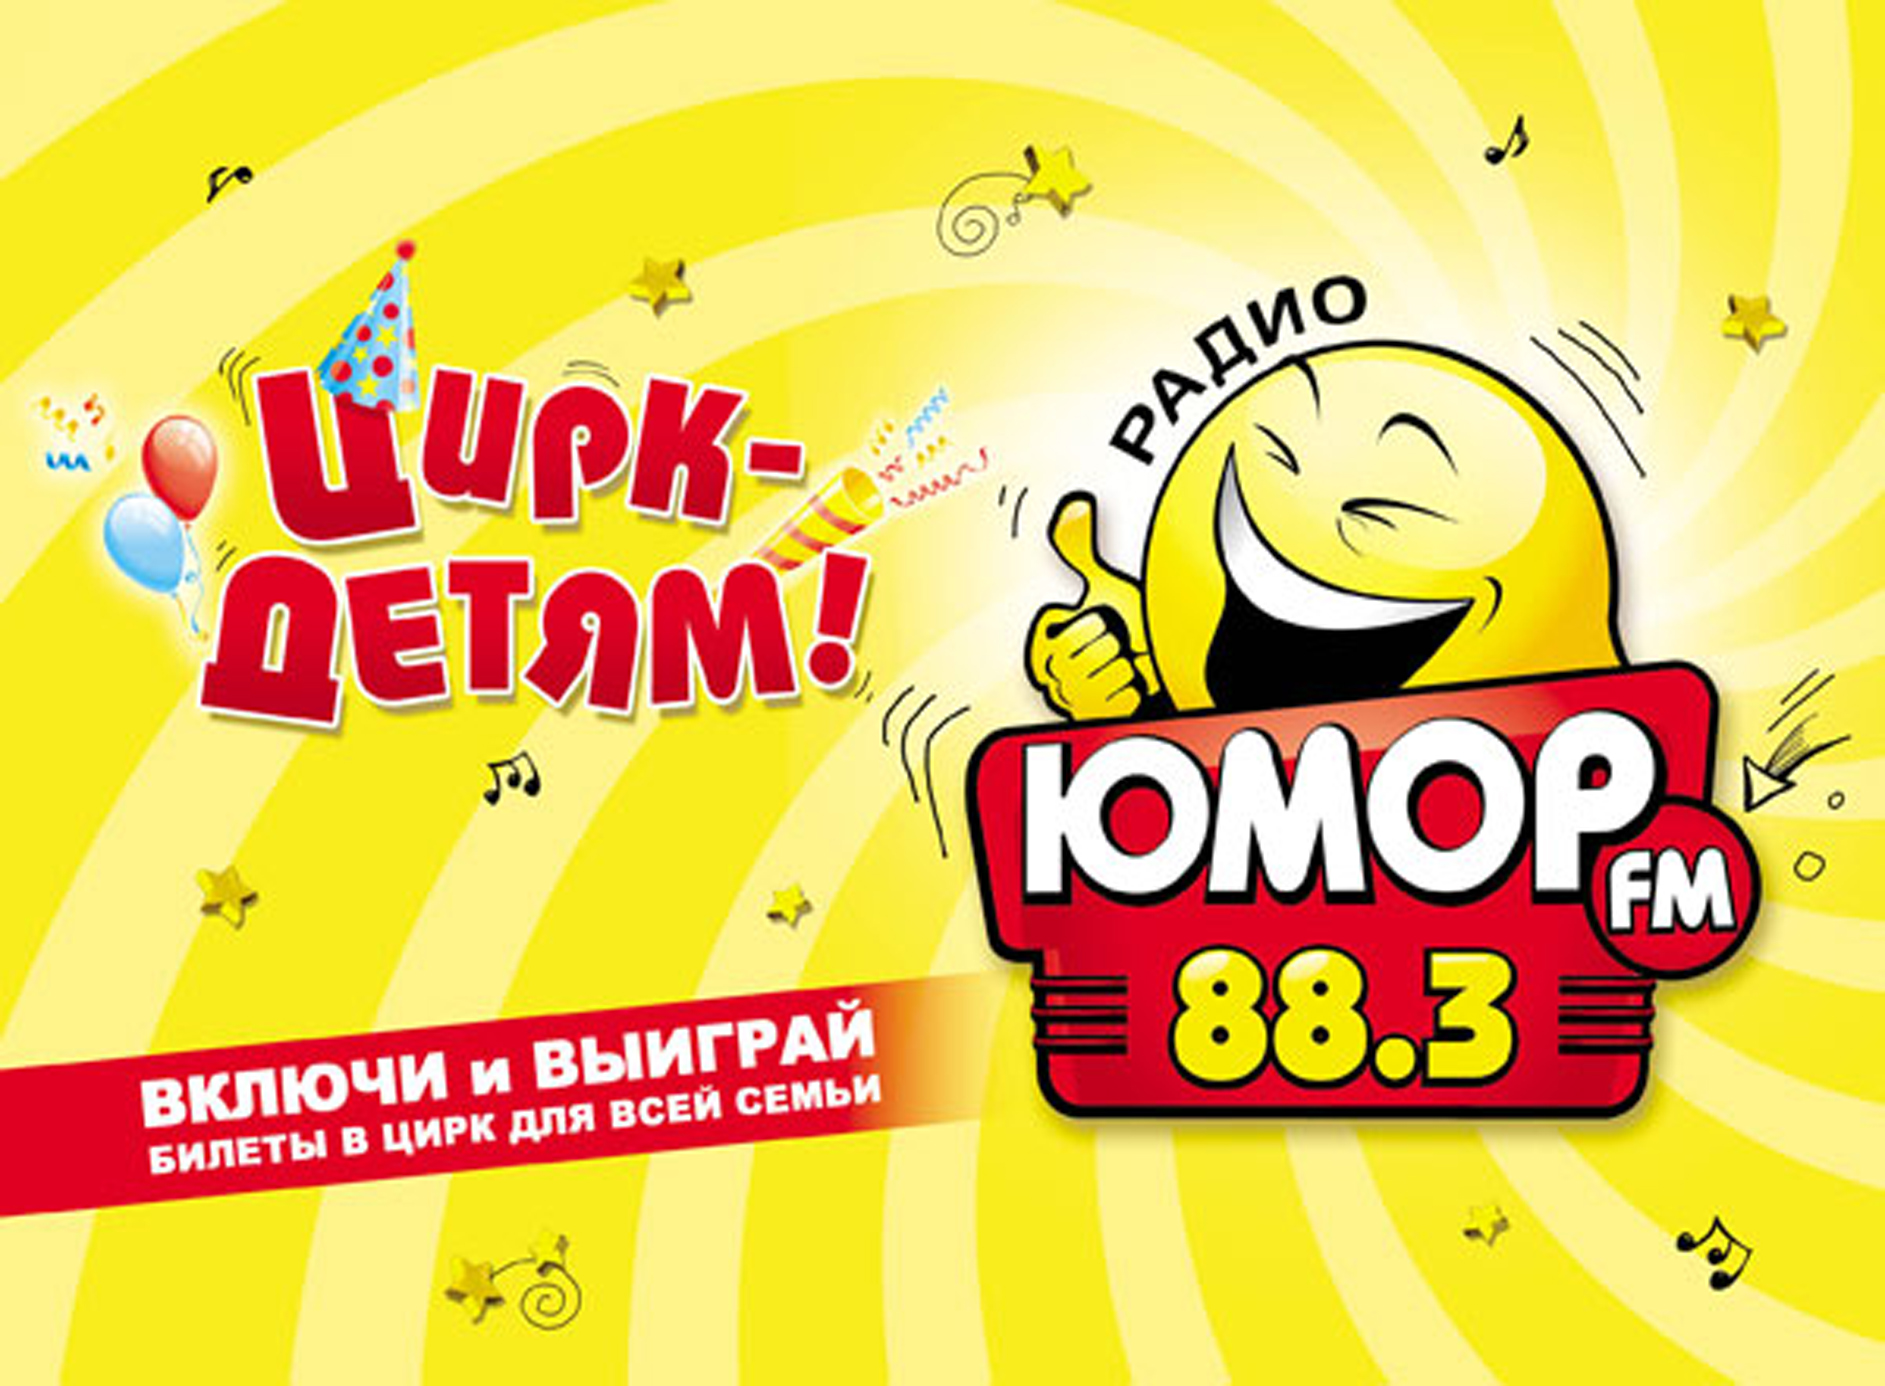 Юмор фм вологда. Юмор fm. Юмор ФМ логотип. Радио юмор ФМ. Юмор fm Москва.